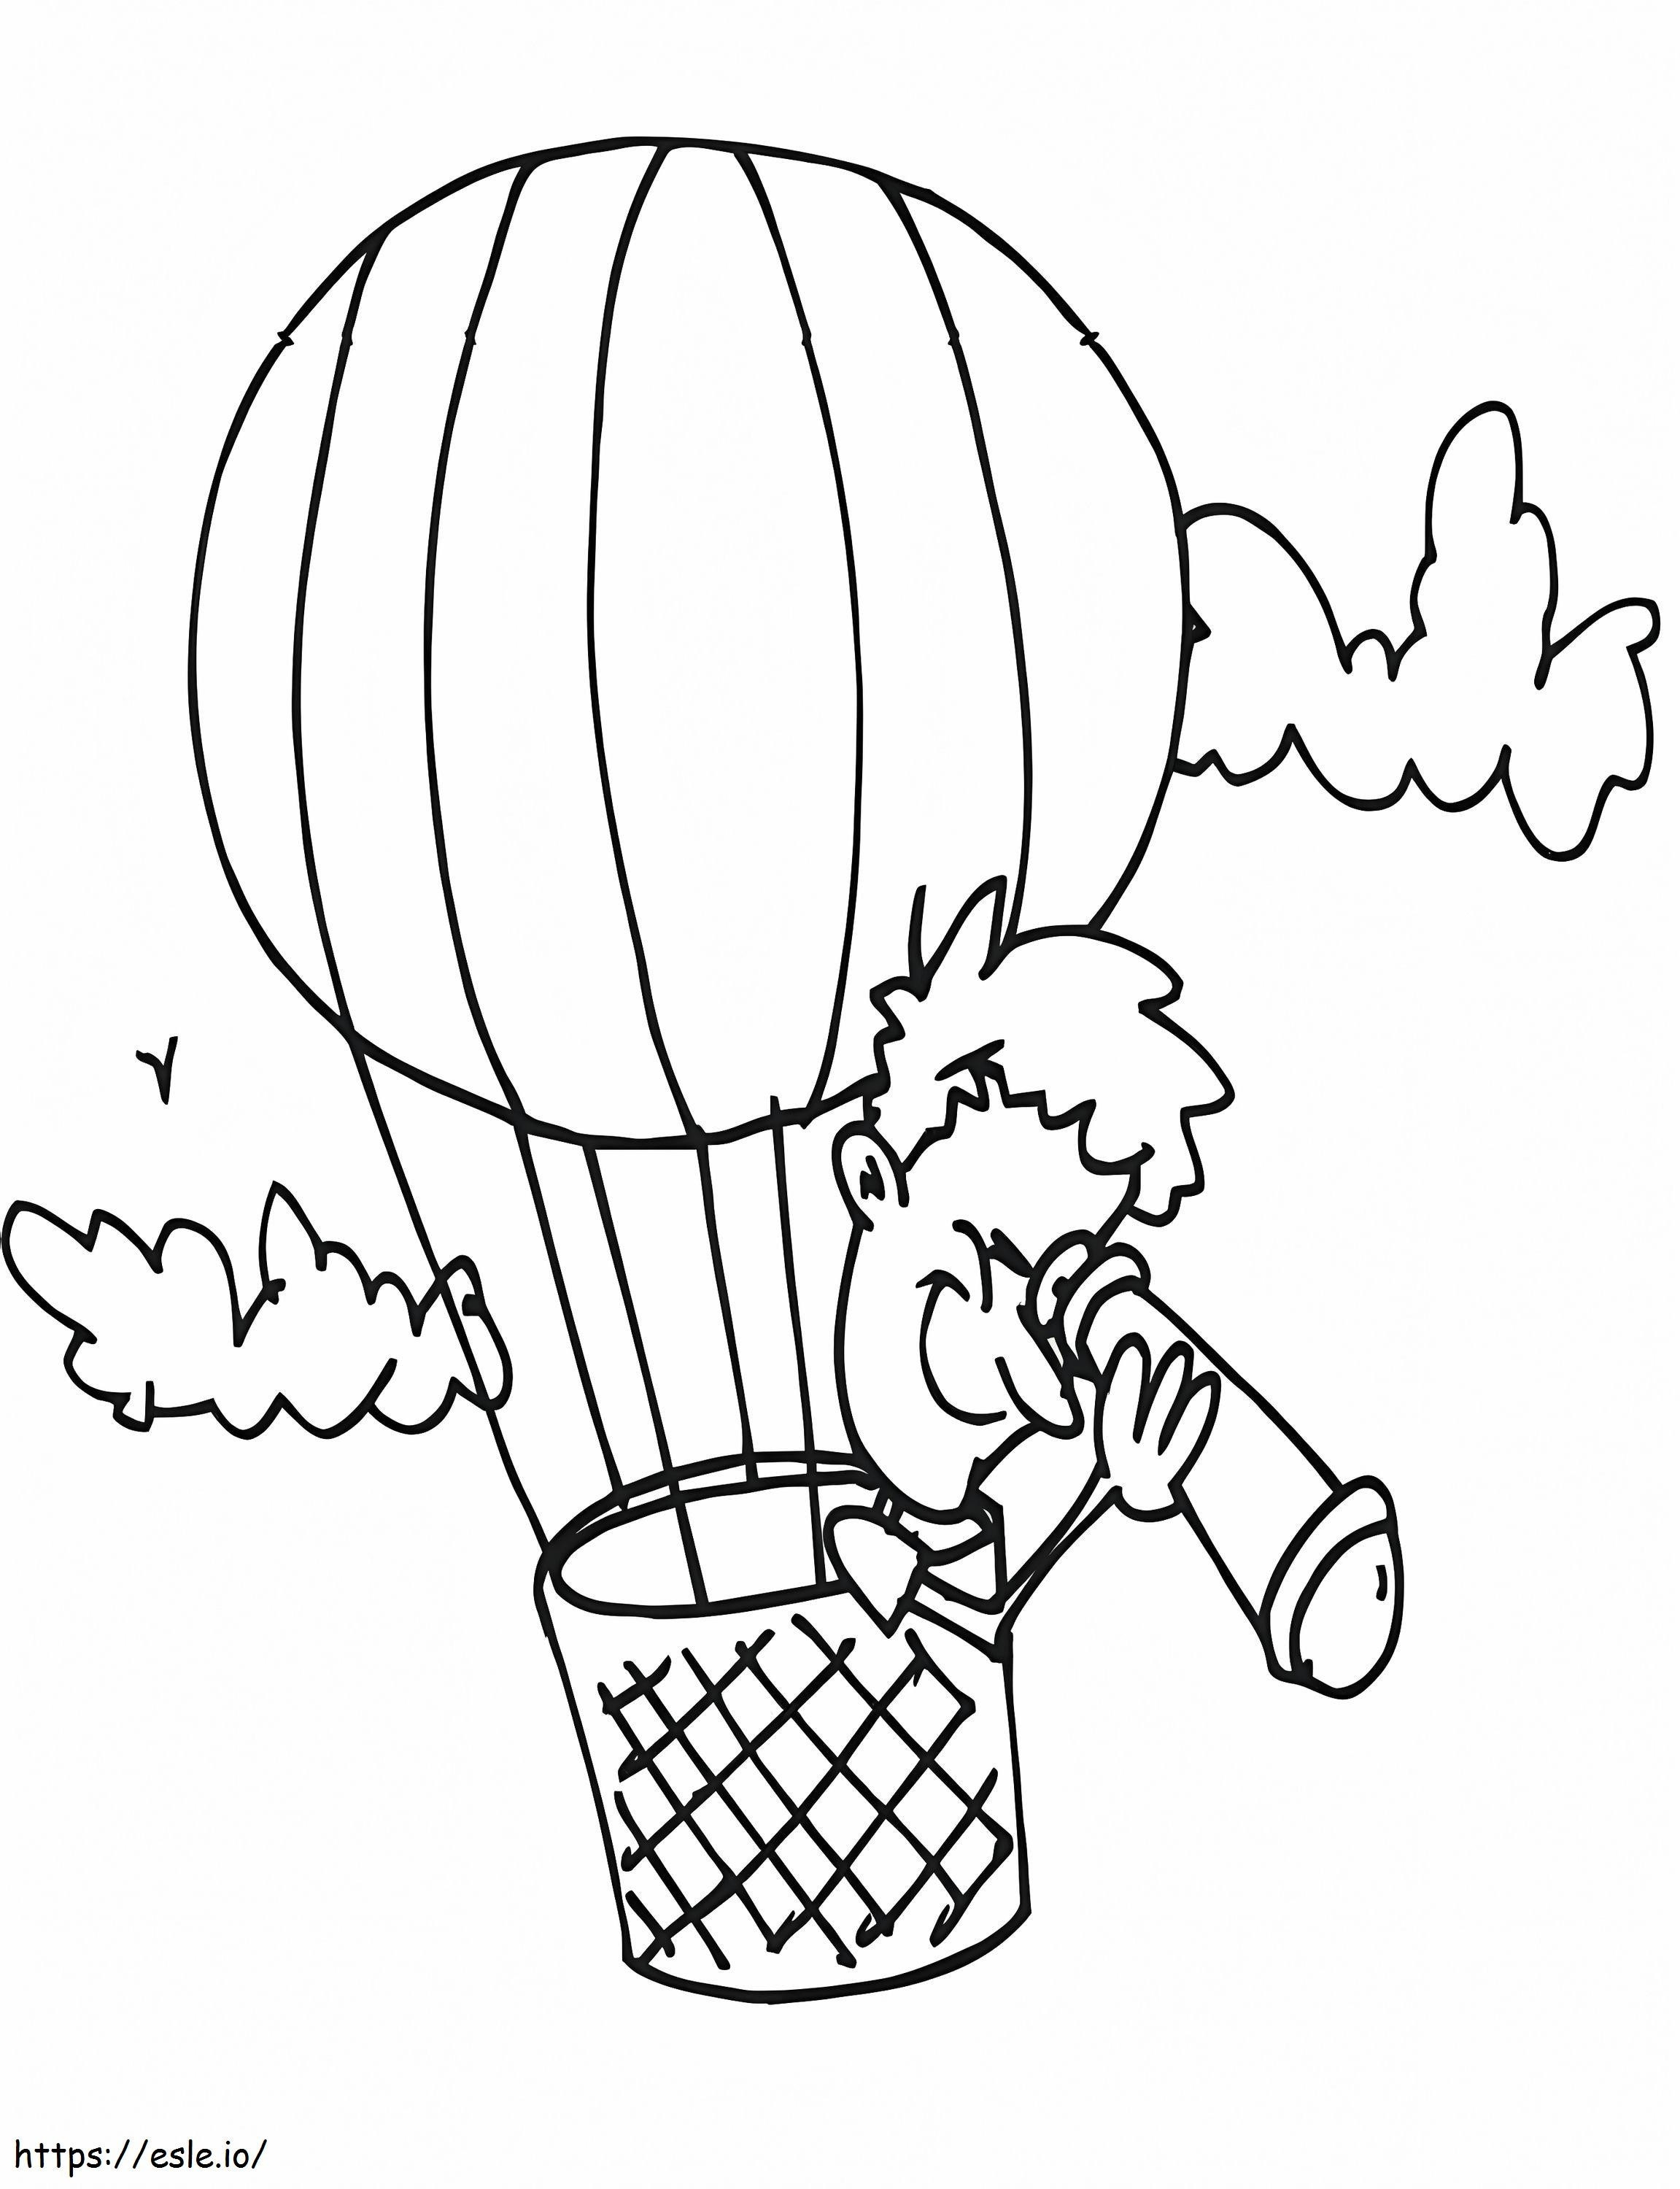 Zwykły balon na ogrzane powietrze 1 kolorowanka